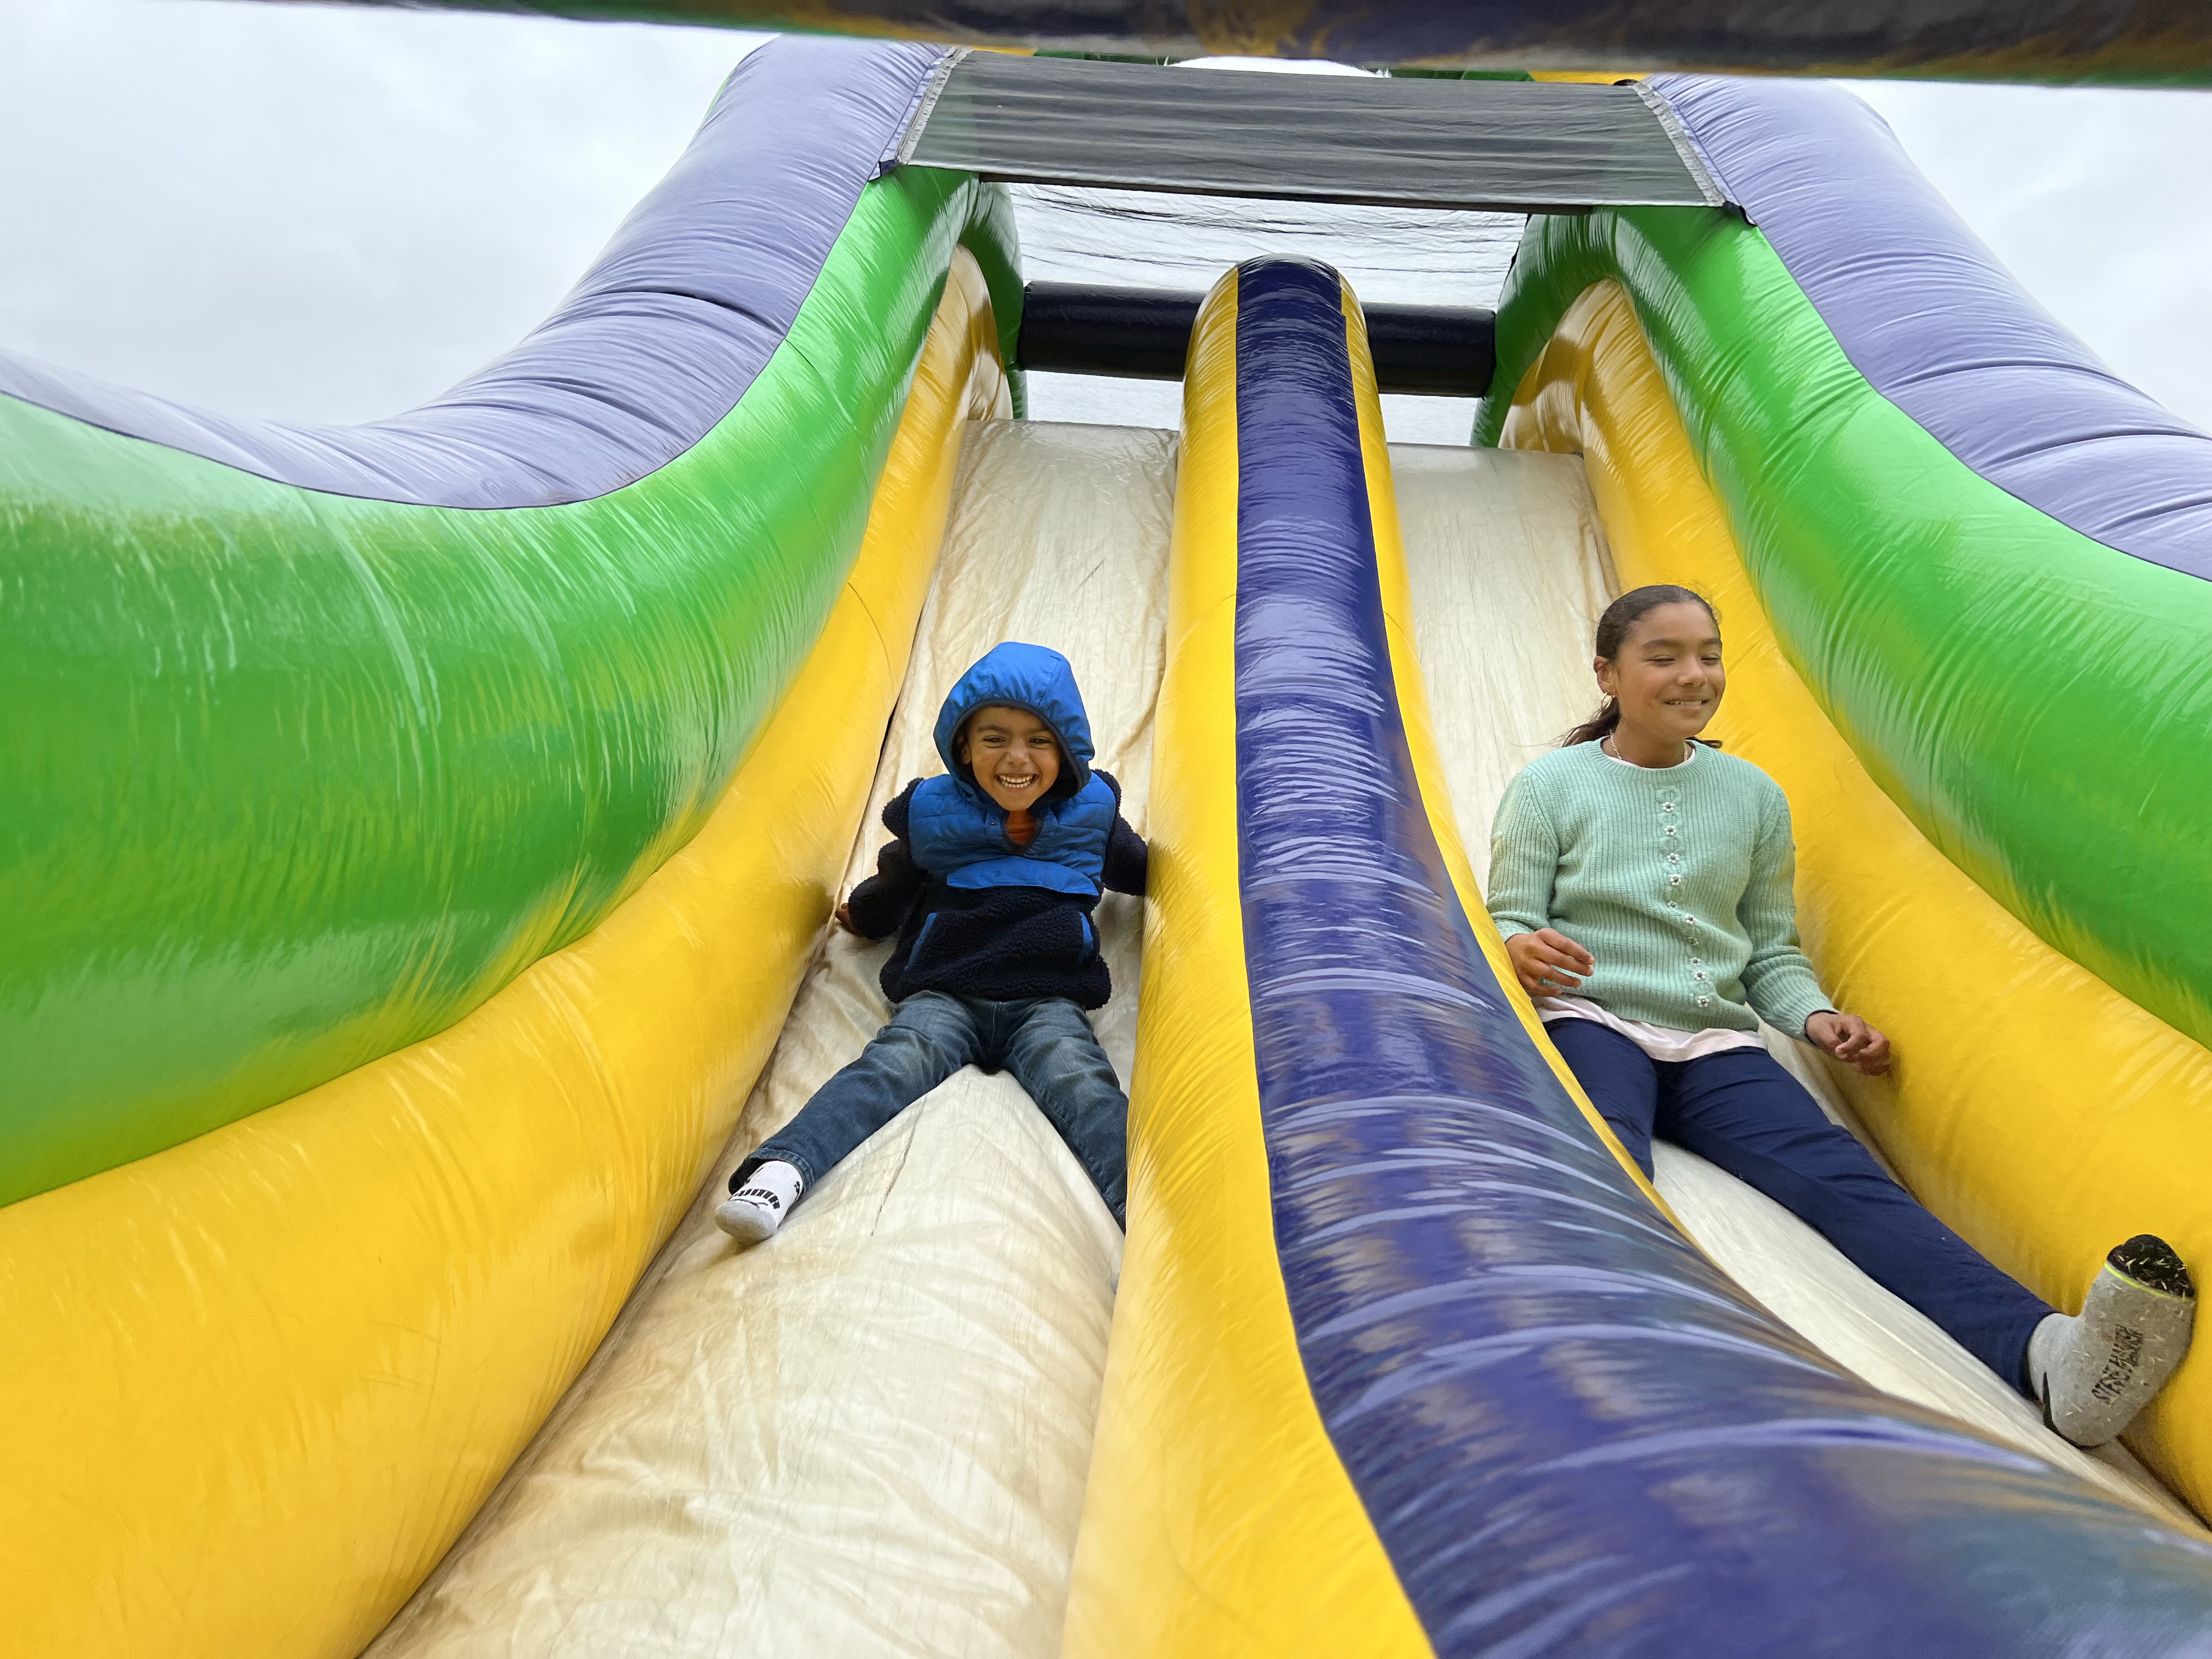 Kids in slide.jpg